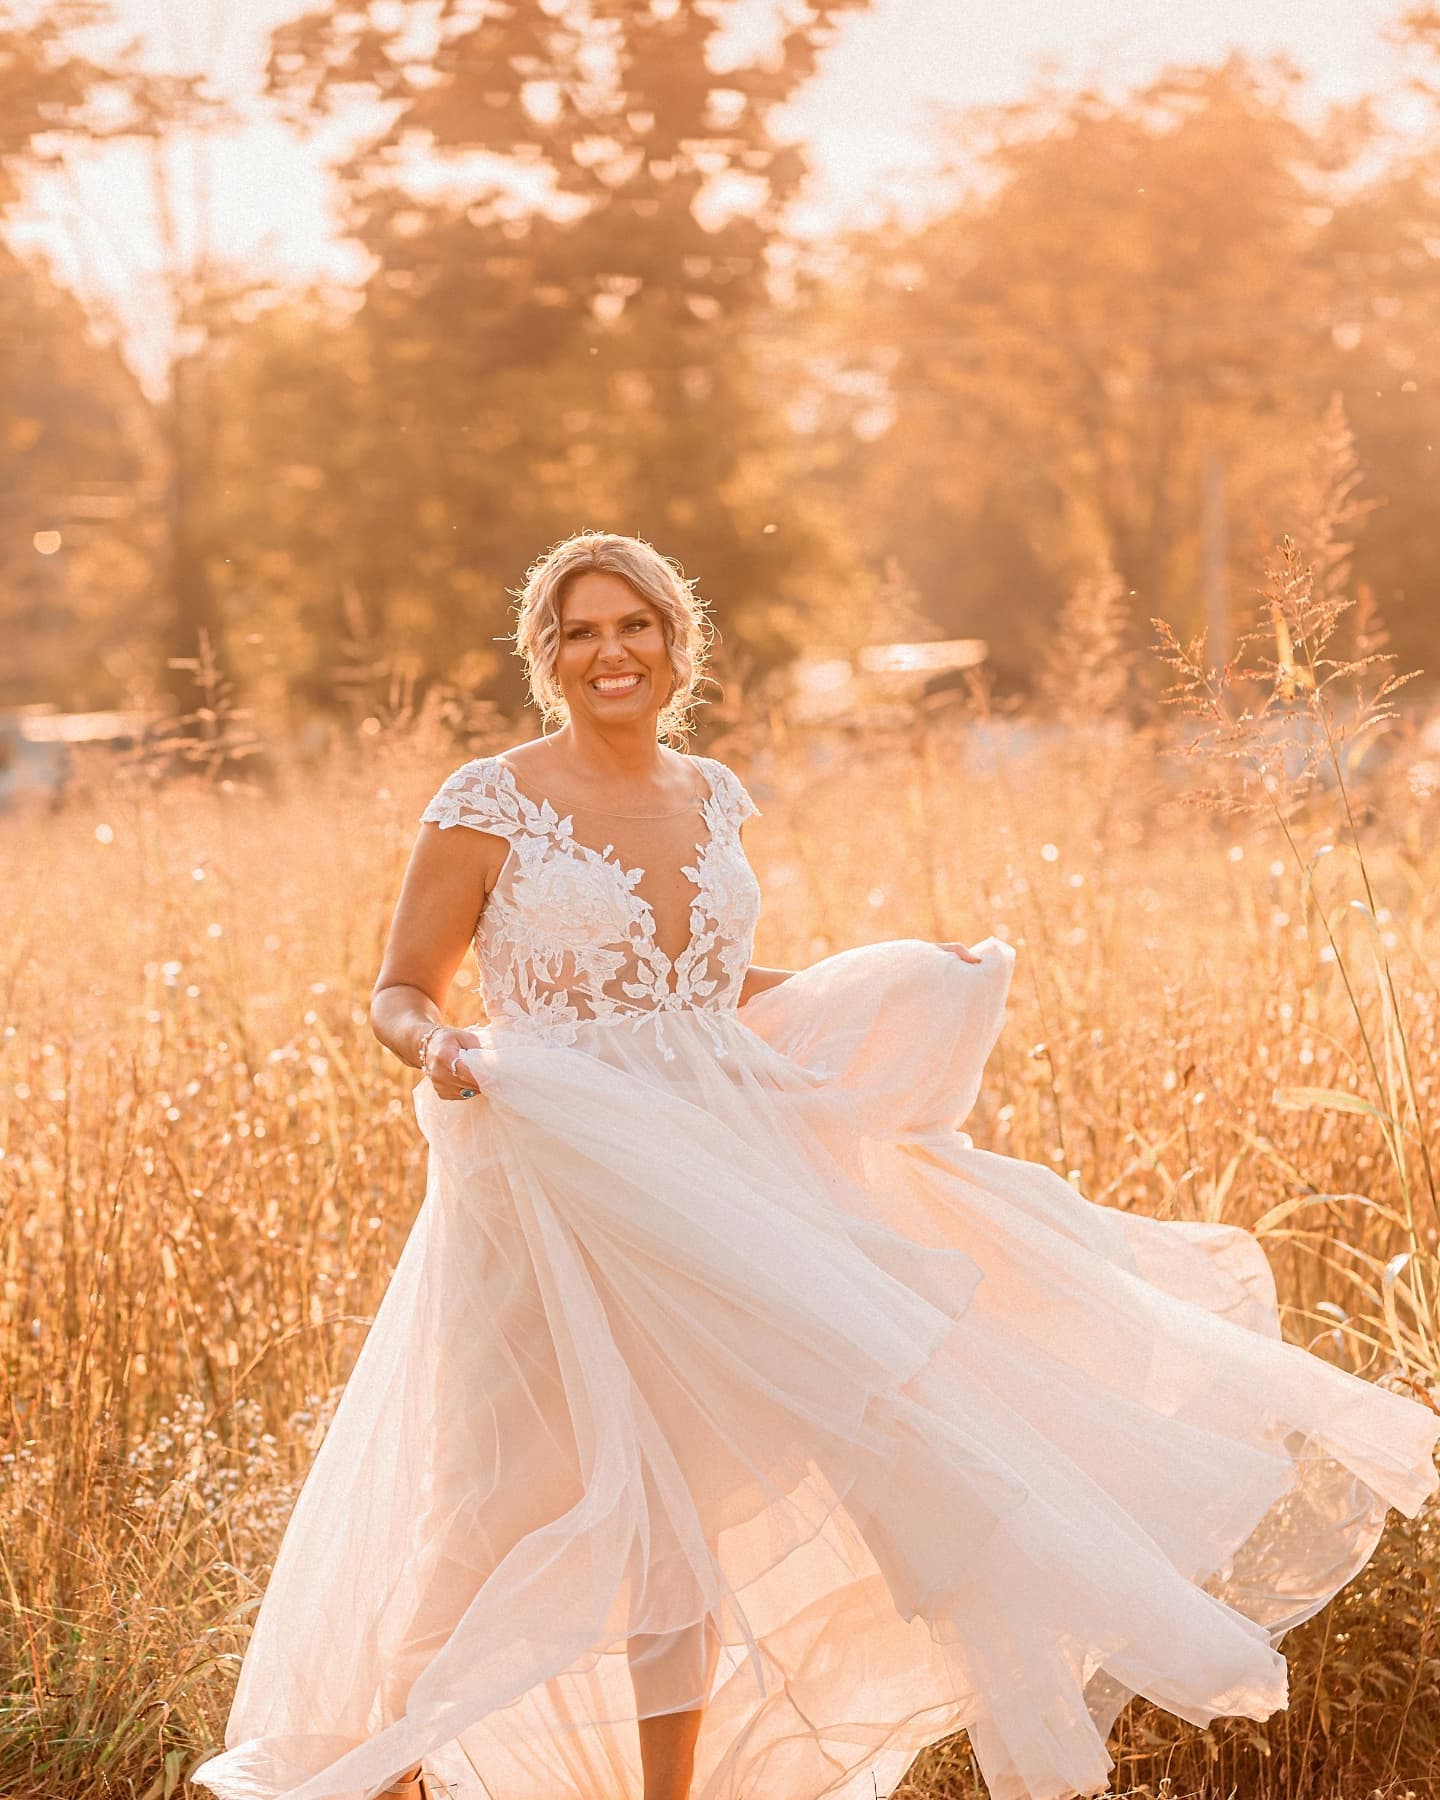 Illusion Cap Sleeve Lace Appliqued Wedding Dress - mariée dans un champ à l'heure d'or